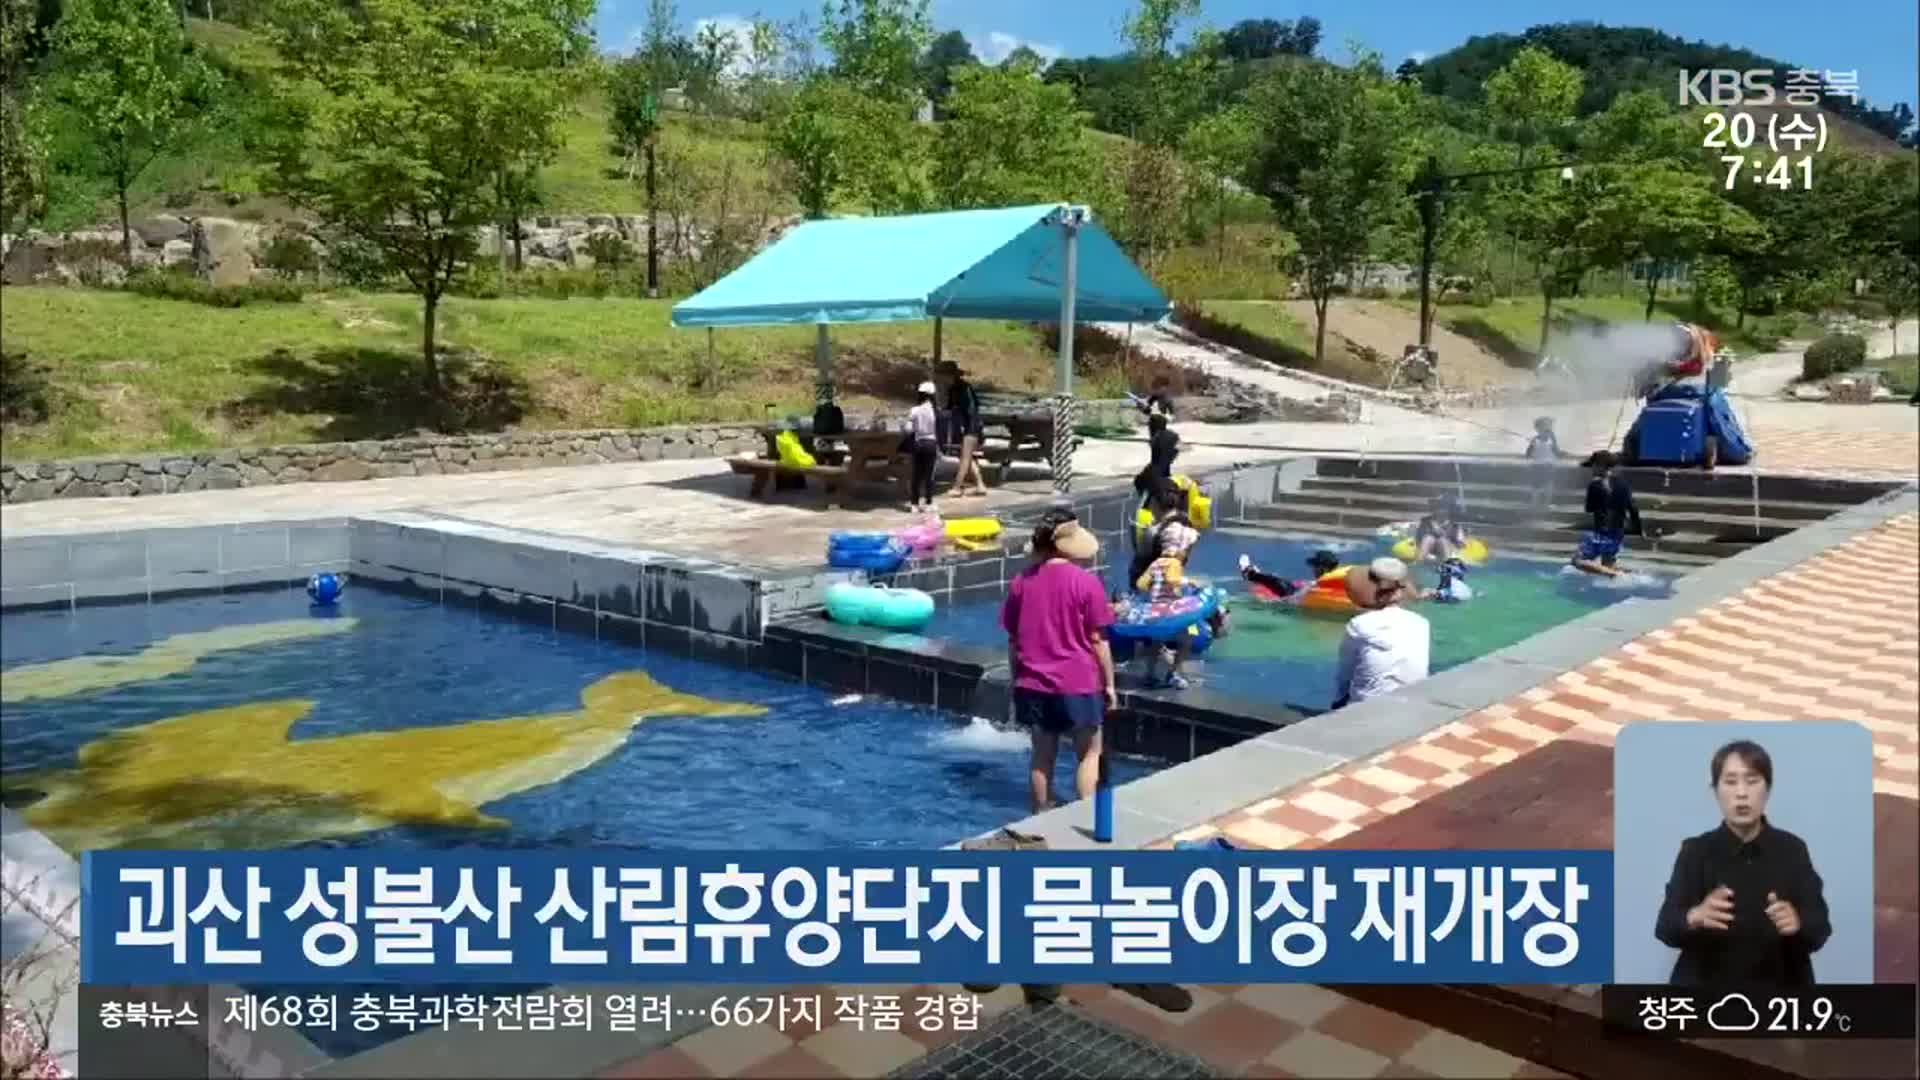 괴산 성불산 산림휴양단지 물놀이장 재개장